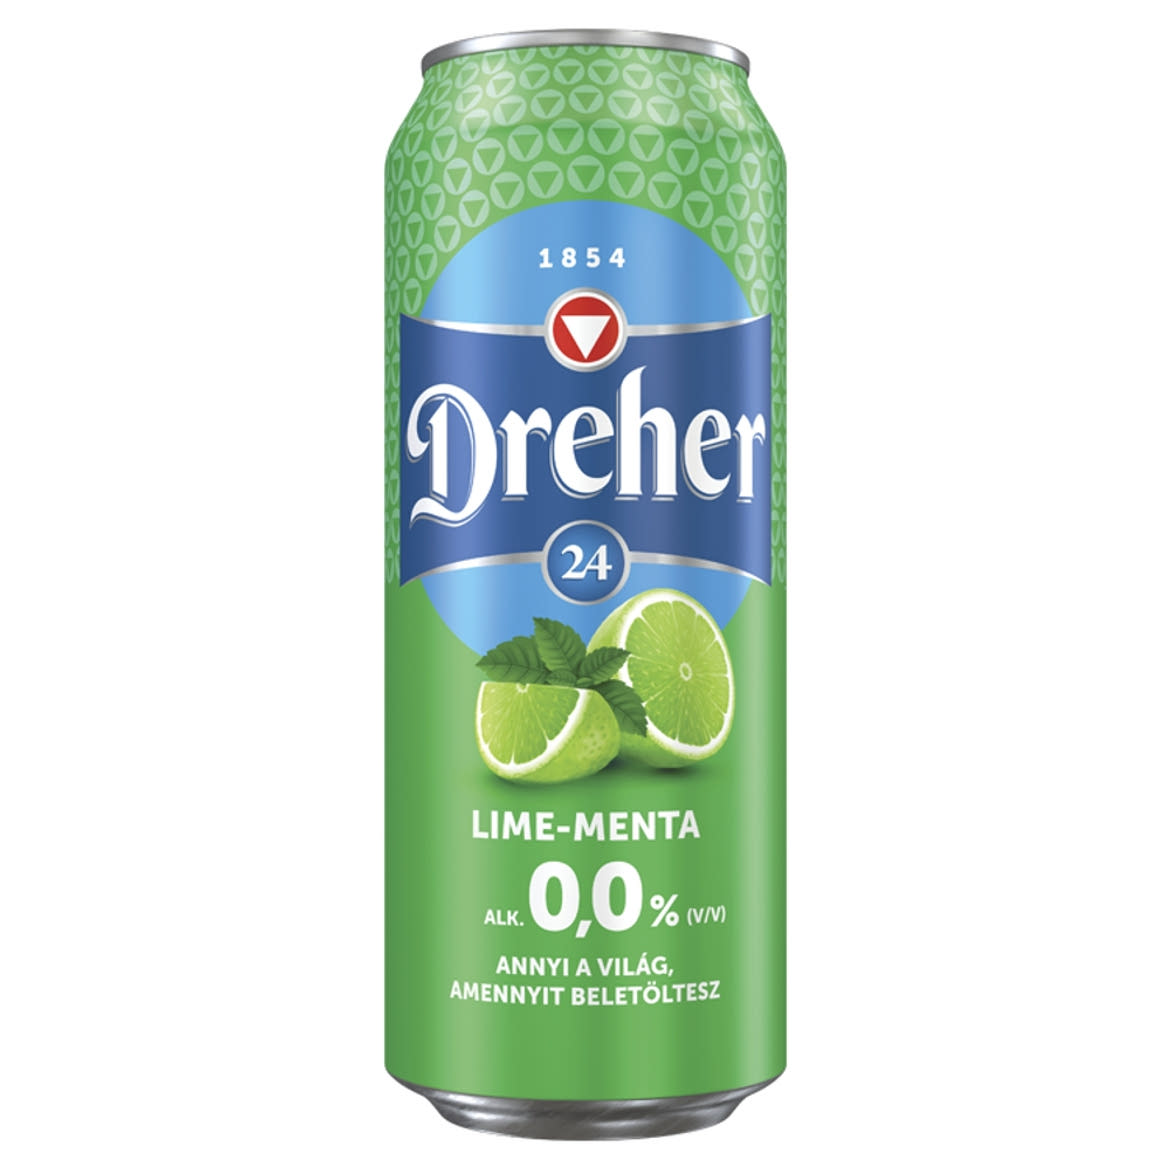 Dreher 24 alkoholmentes világos sör és lime- menta ízű ital keveréke